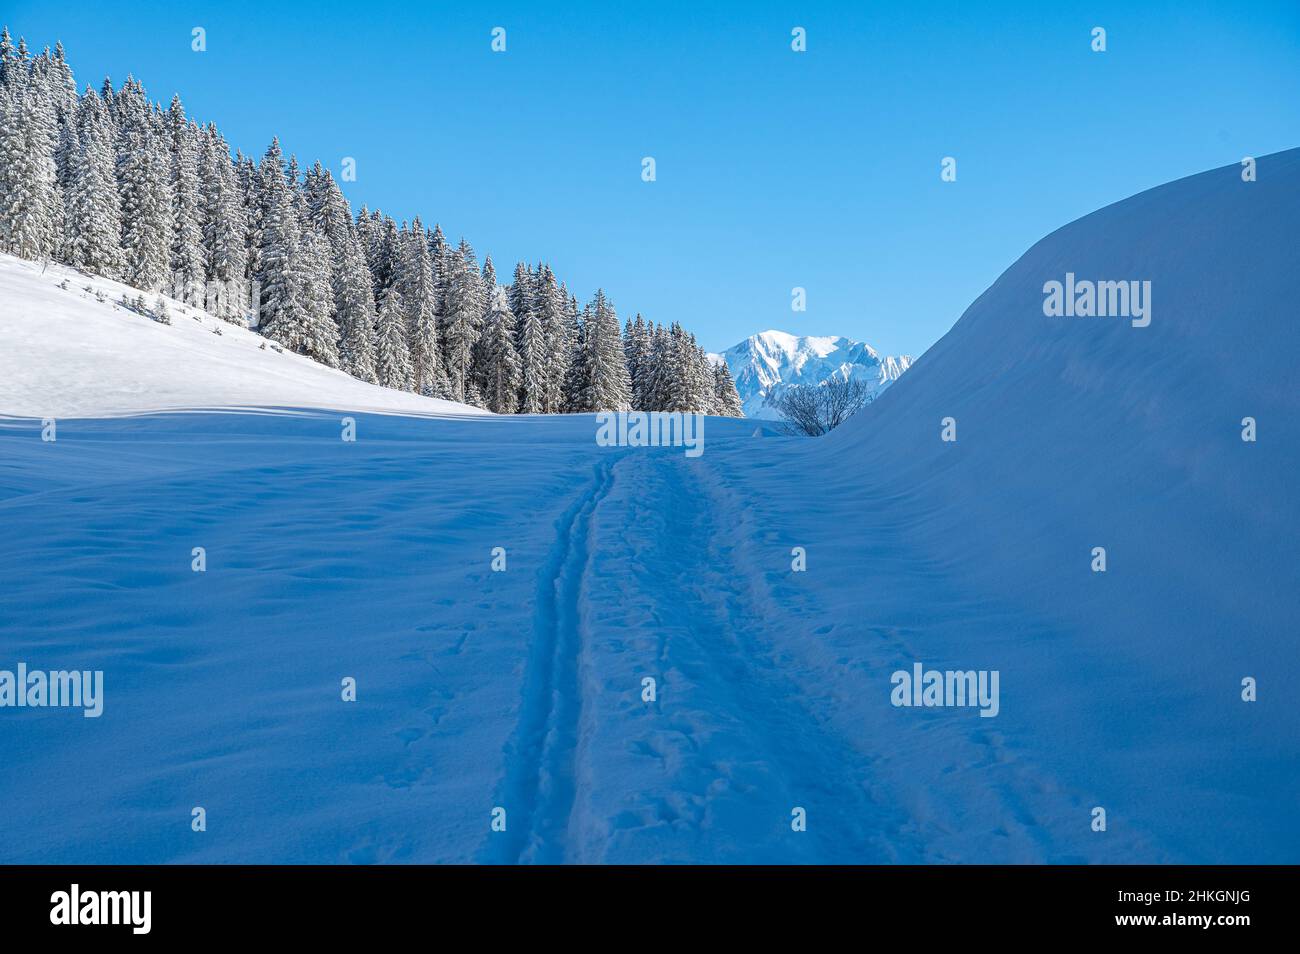 Sentieri a piedi, tracce nel campo di neve lungo una pineta che conduce verso una montagna enorme delle Alpi europee catena montuosa. Foto Stock